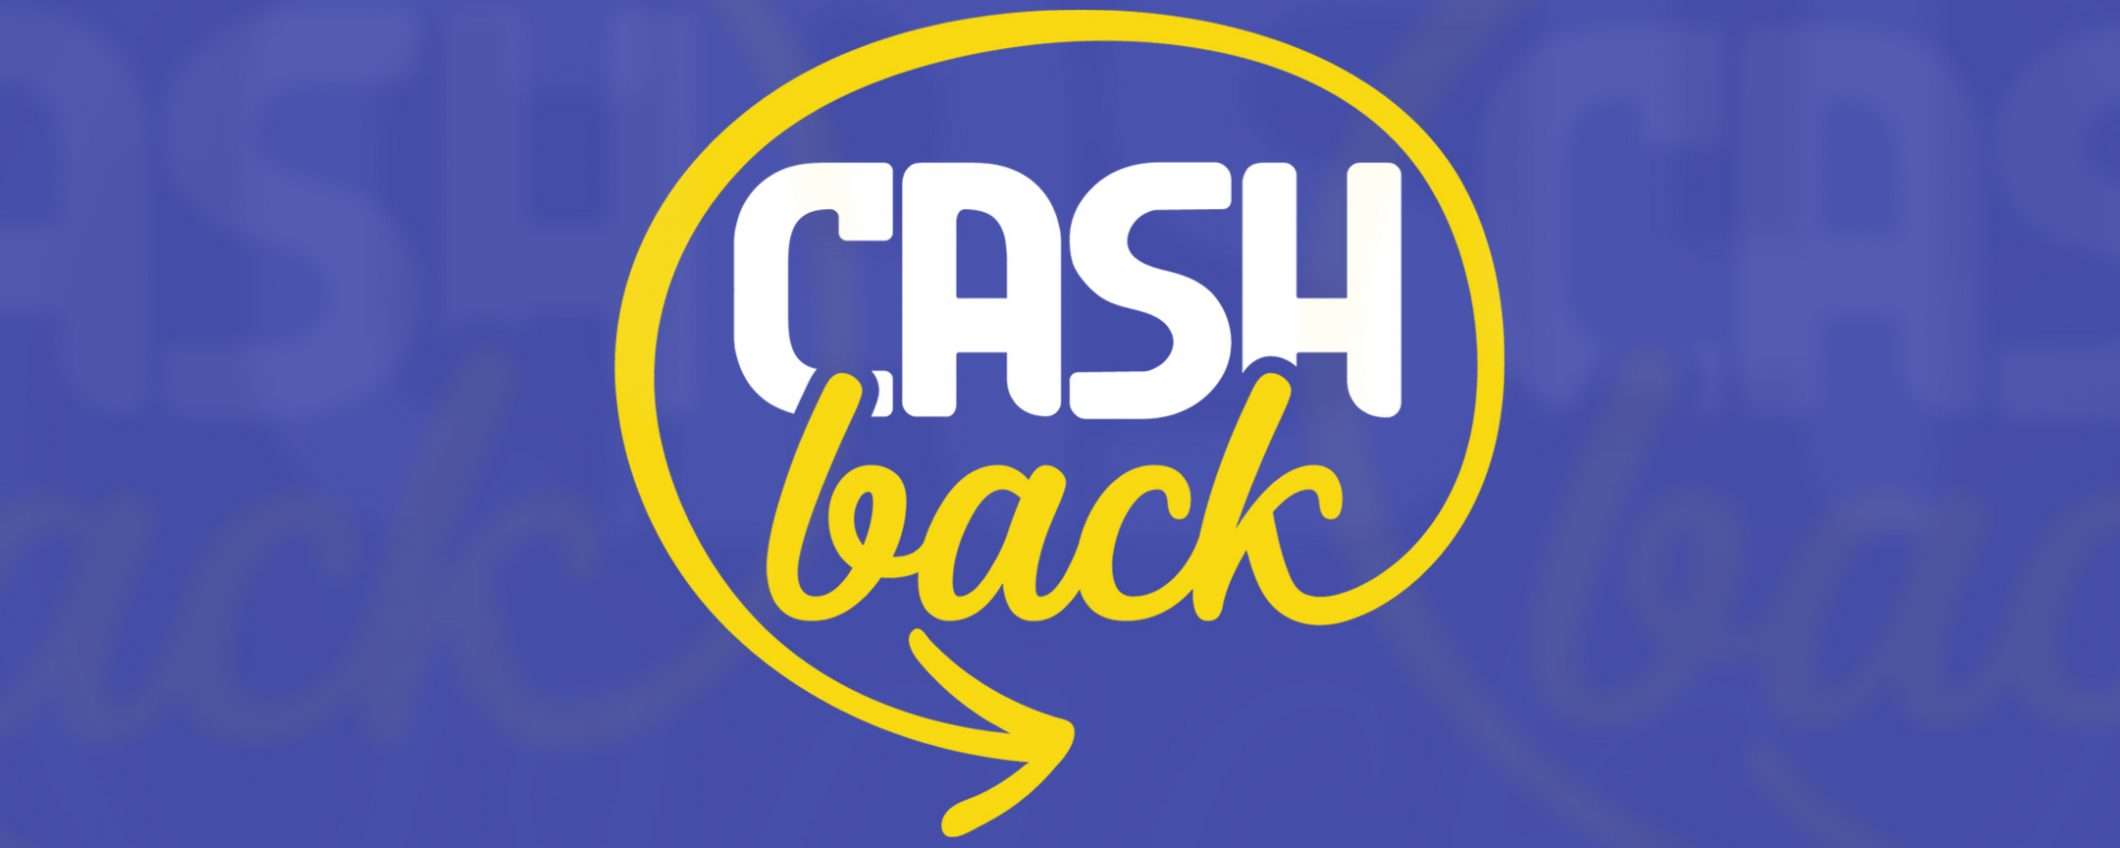 Cashback, superato il mezzo miliardo di transazioni